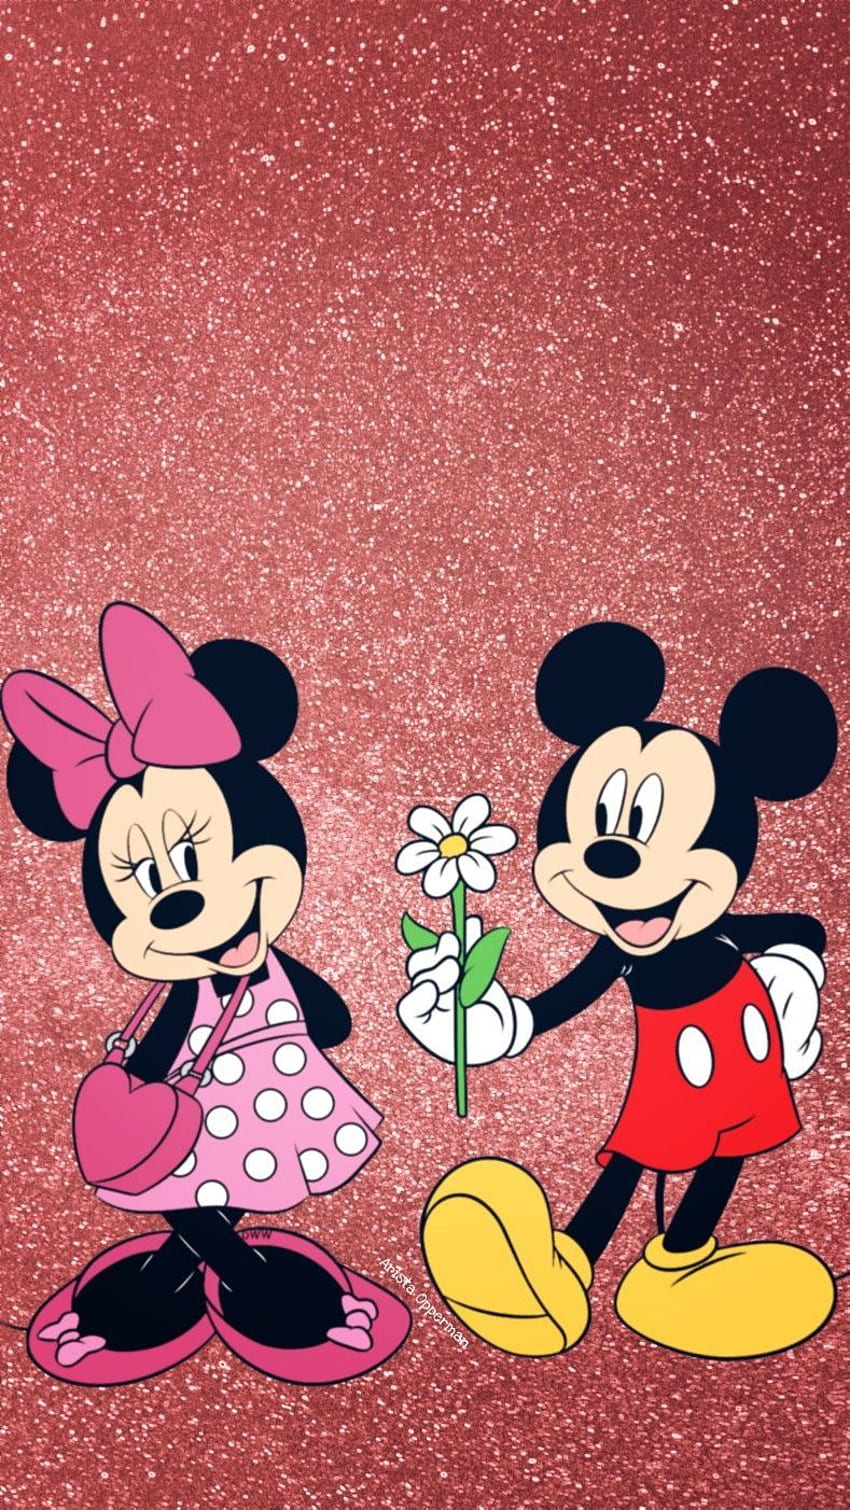 Bạn yêu thích Mickey & Minnie? Vậy thì hình ảnh về cặp đôi hoạt hình này chắc chắn sẽ làm bạn vui mừng! Với những hình ảnh đầy sắc màu và tình cảm, bạn sẽ cảm thấy yêu thích chúng ngay lập tức. Hãy xem ngay!